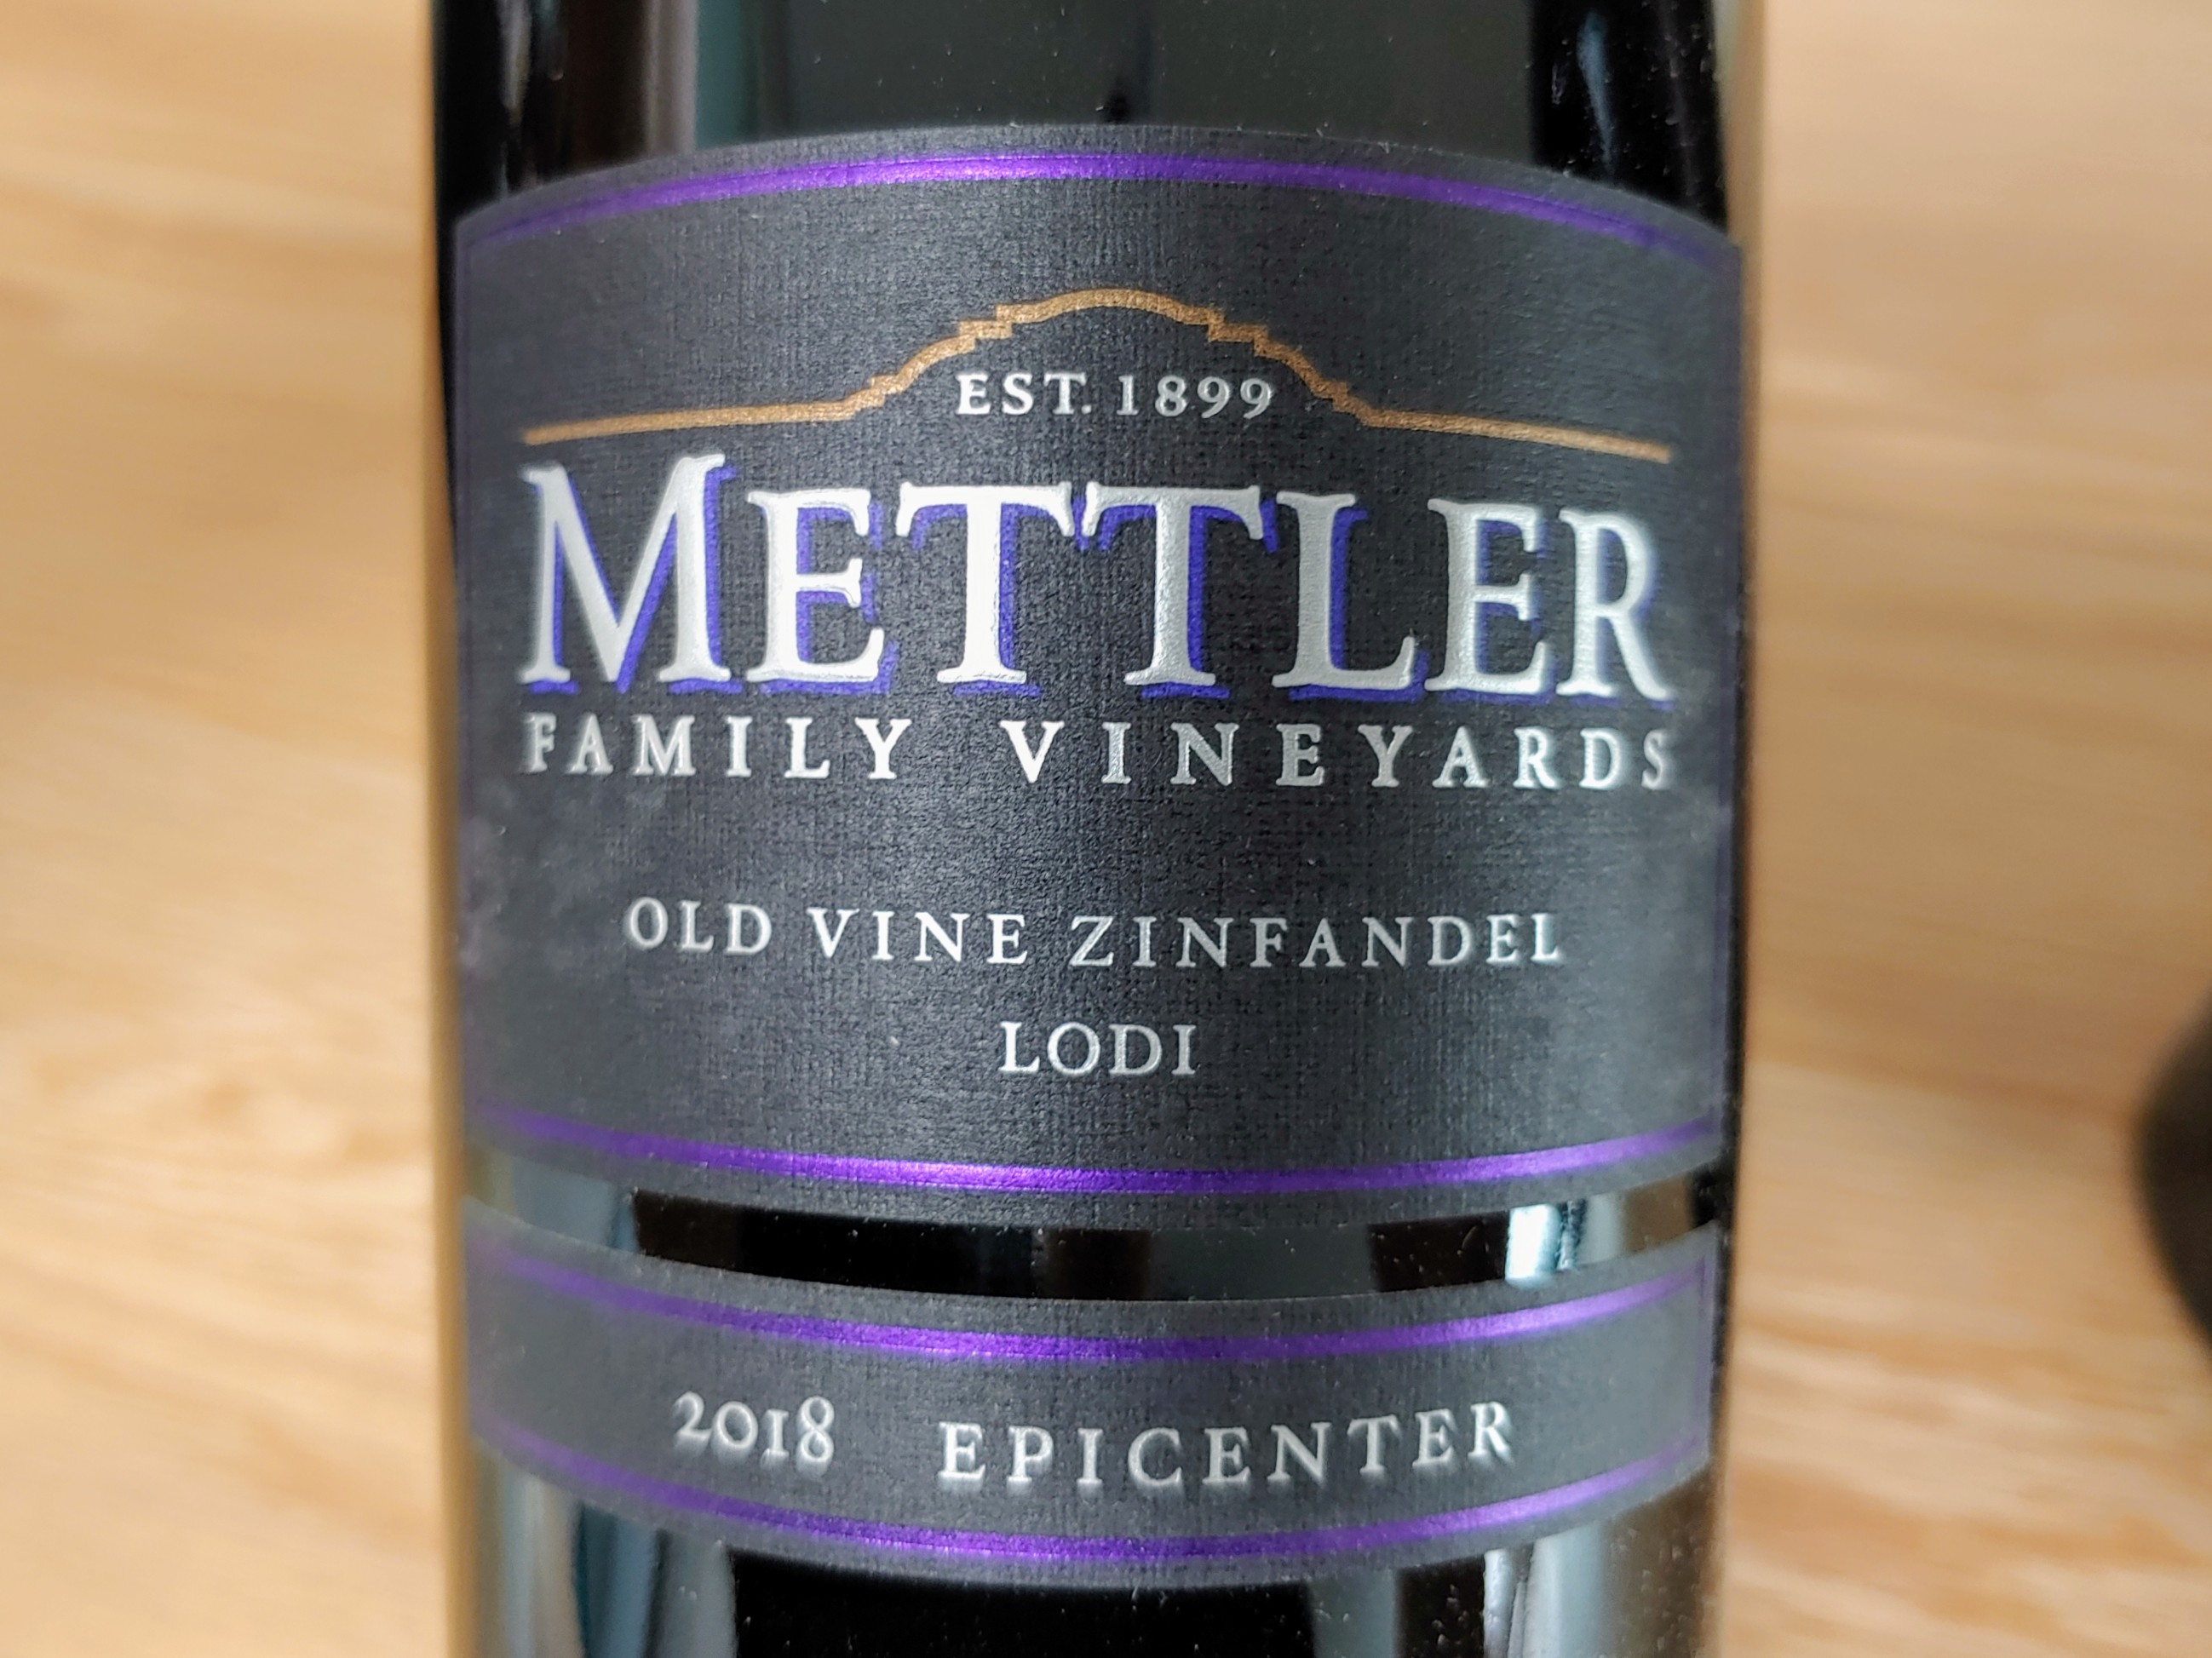 Mettler Family Vineyards Epicenter Old Vine Zinfandel 2018